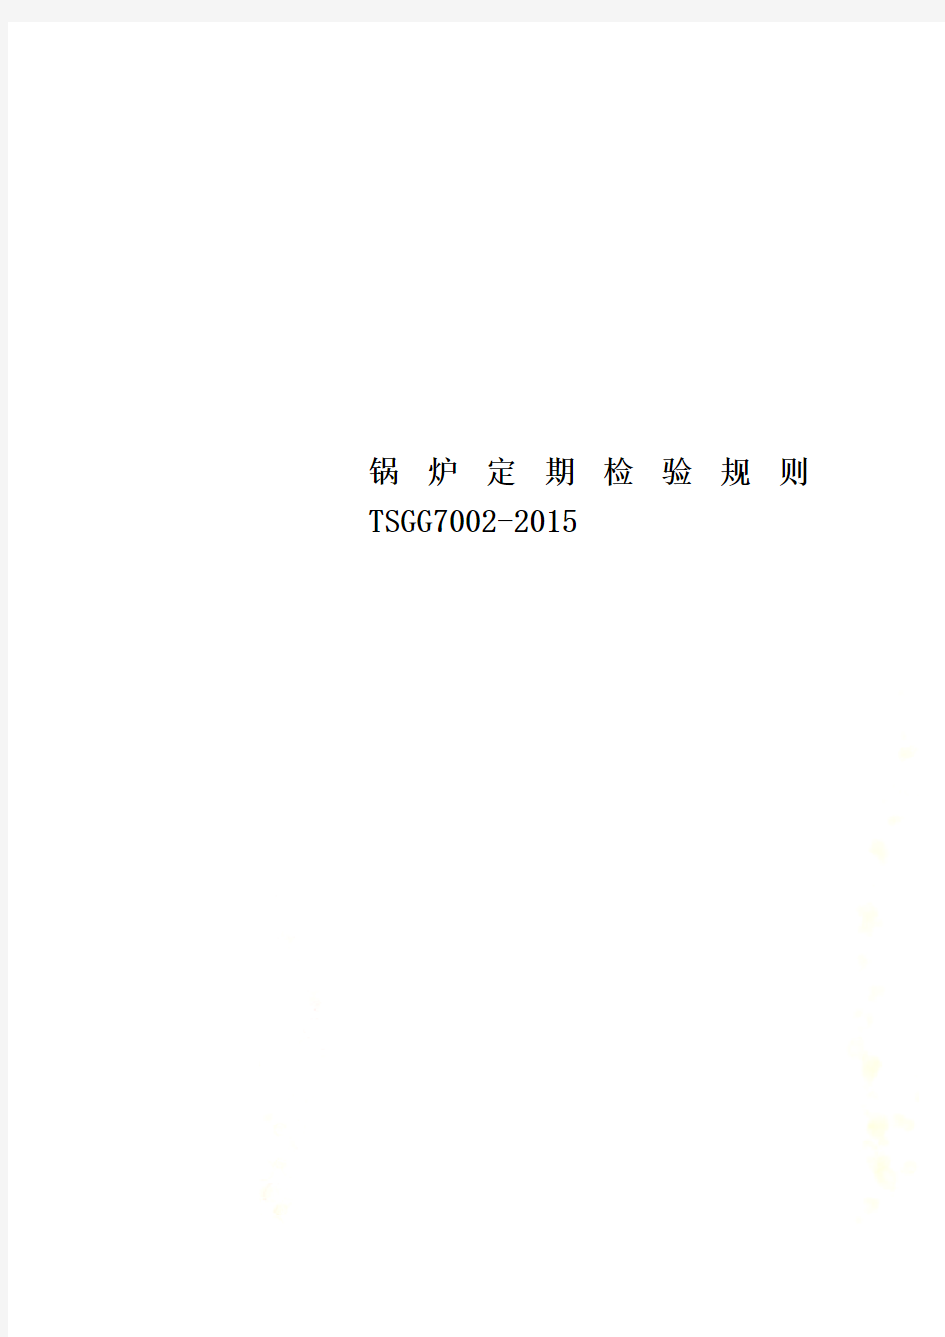 锅炉定期检验规则TSGG7002-2015